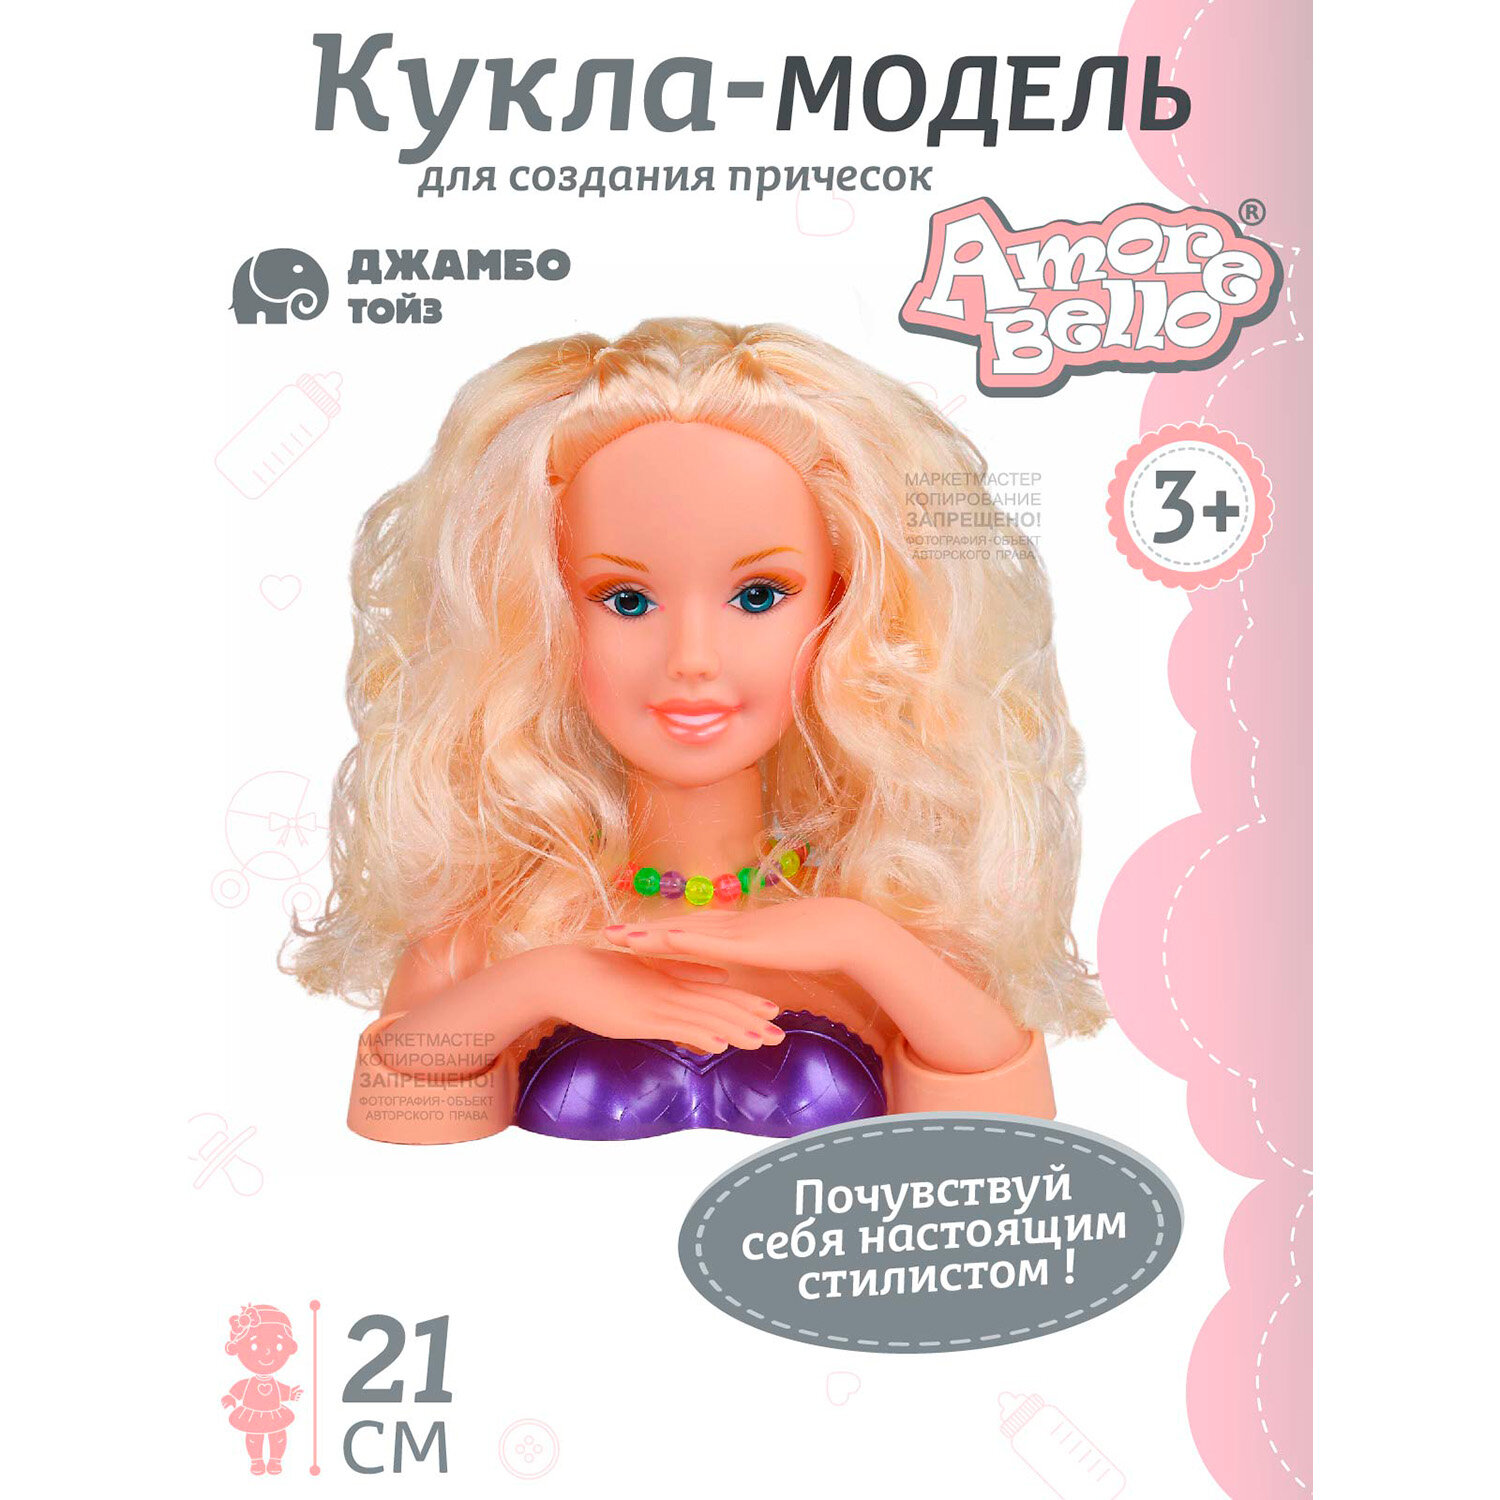 Кукла- модель для причесок с аксессуарами ТМ Amore Bello, длинные волосы, кукла-манекен, салон красоты, играем в парикмахера, для девочек, JB0207316